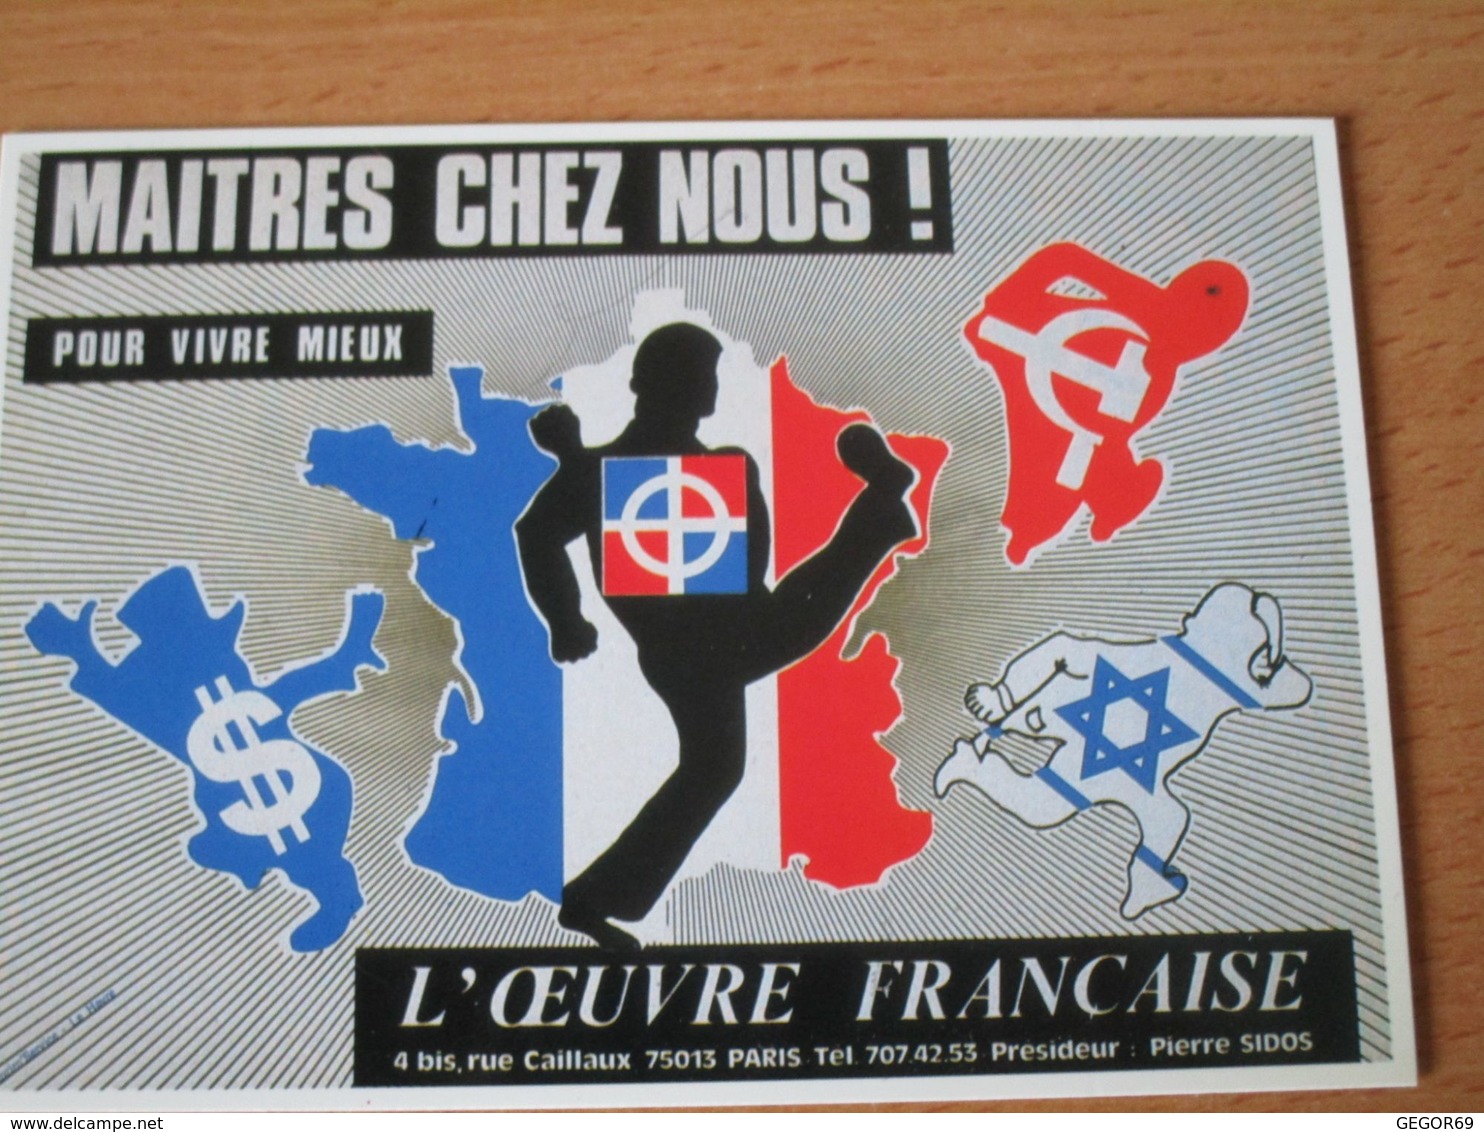 CARTE POSTALE L'OEUVRE FRANCAISE MAITRES CHEZ NOUS FRONT NATIONAL - Partis Politiques & élections